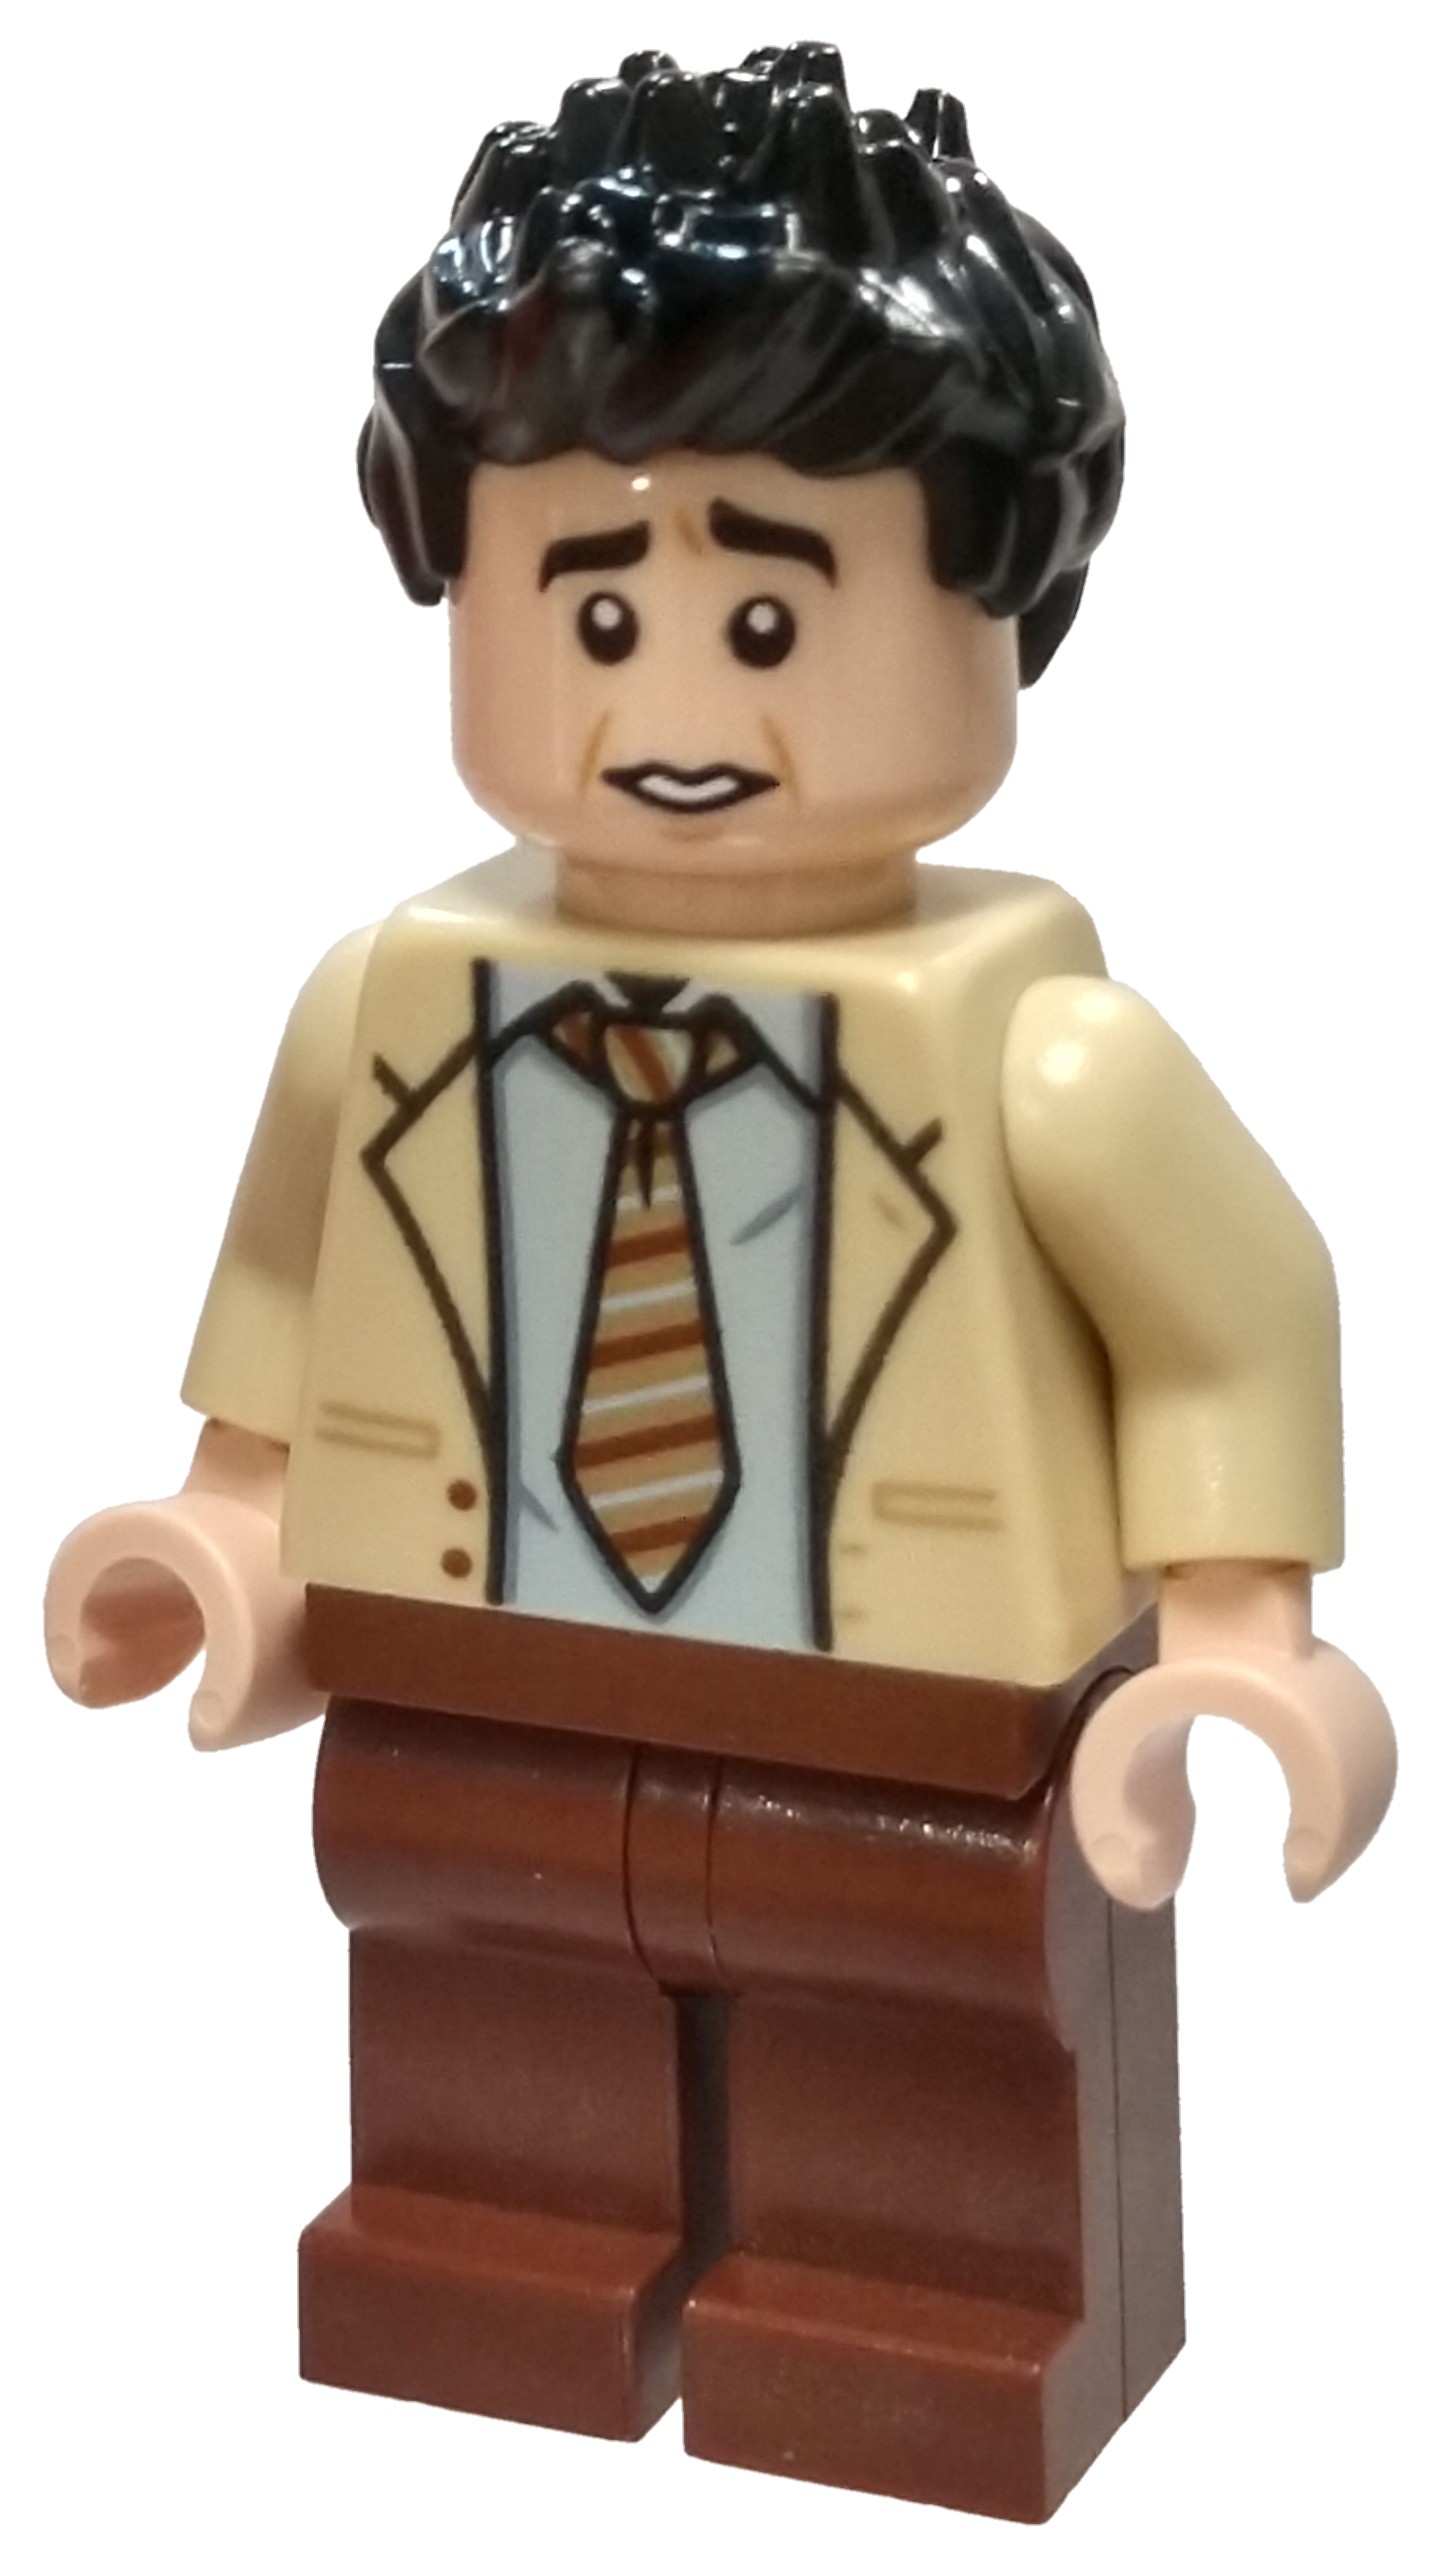 Bau- & Konstruktions-Minifiguren LEGO Ross Geller Minifigure FRIENDS TV ...